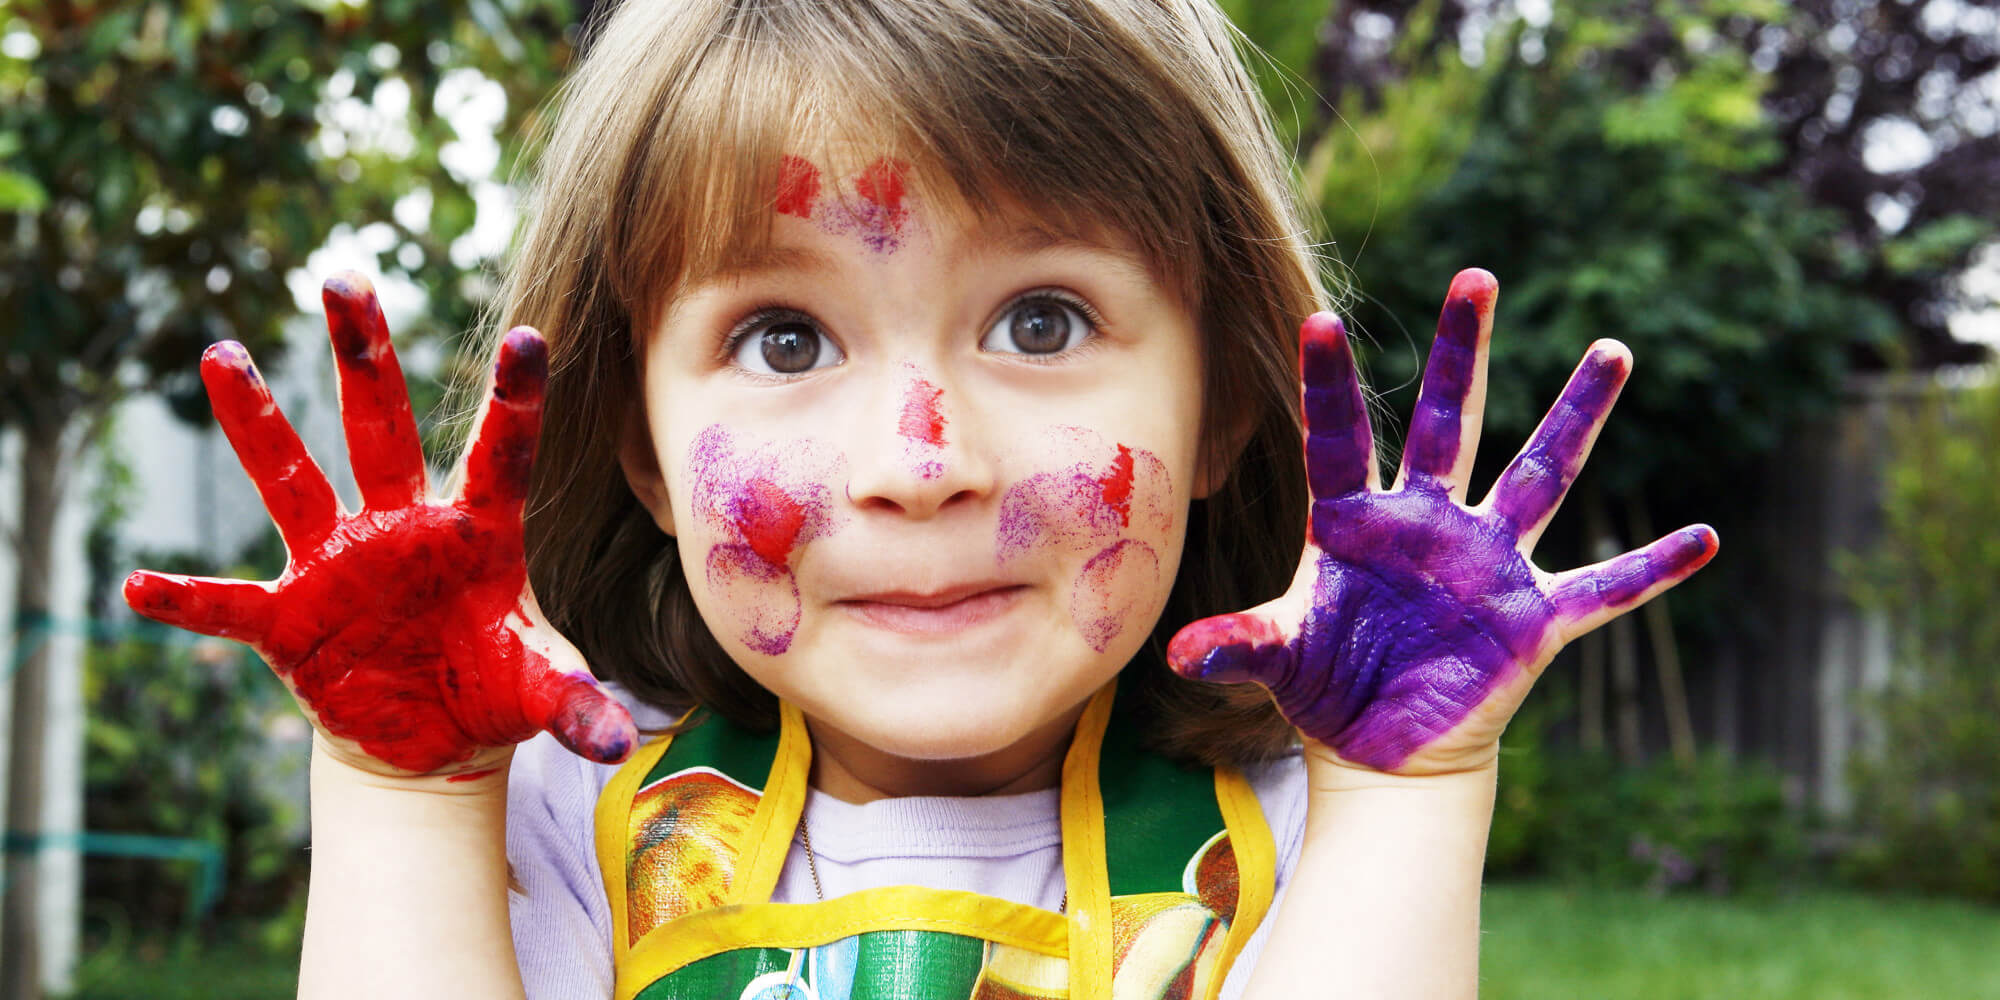 Une jeune fille avec de la peinture sur les mains et le visage.